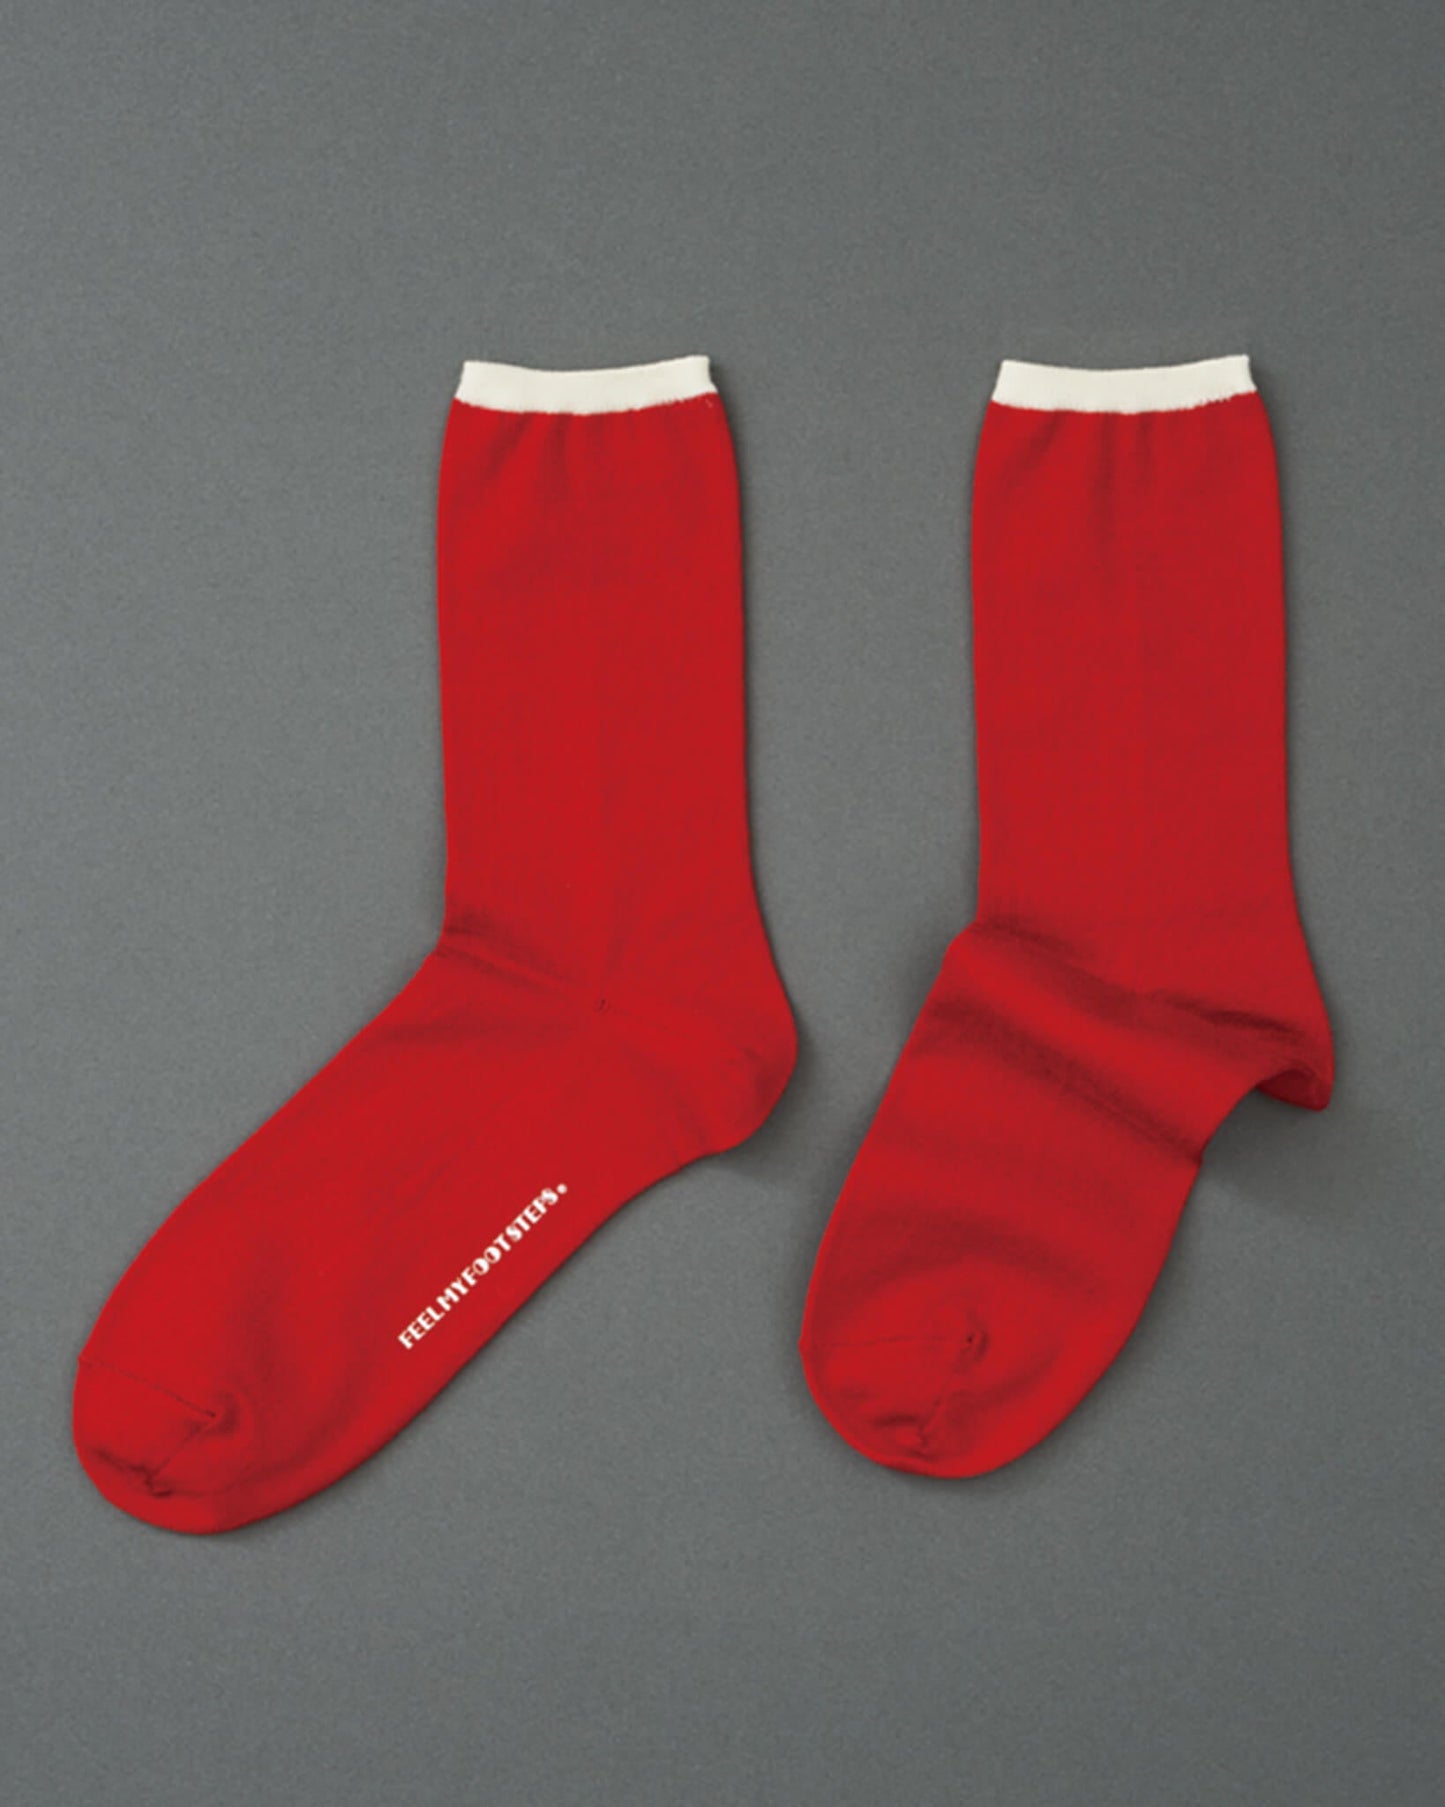 SIMPLE-pattern socks-red